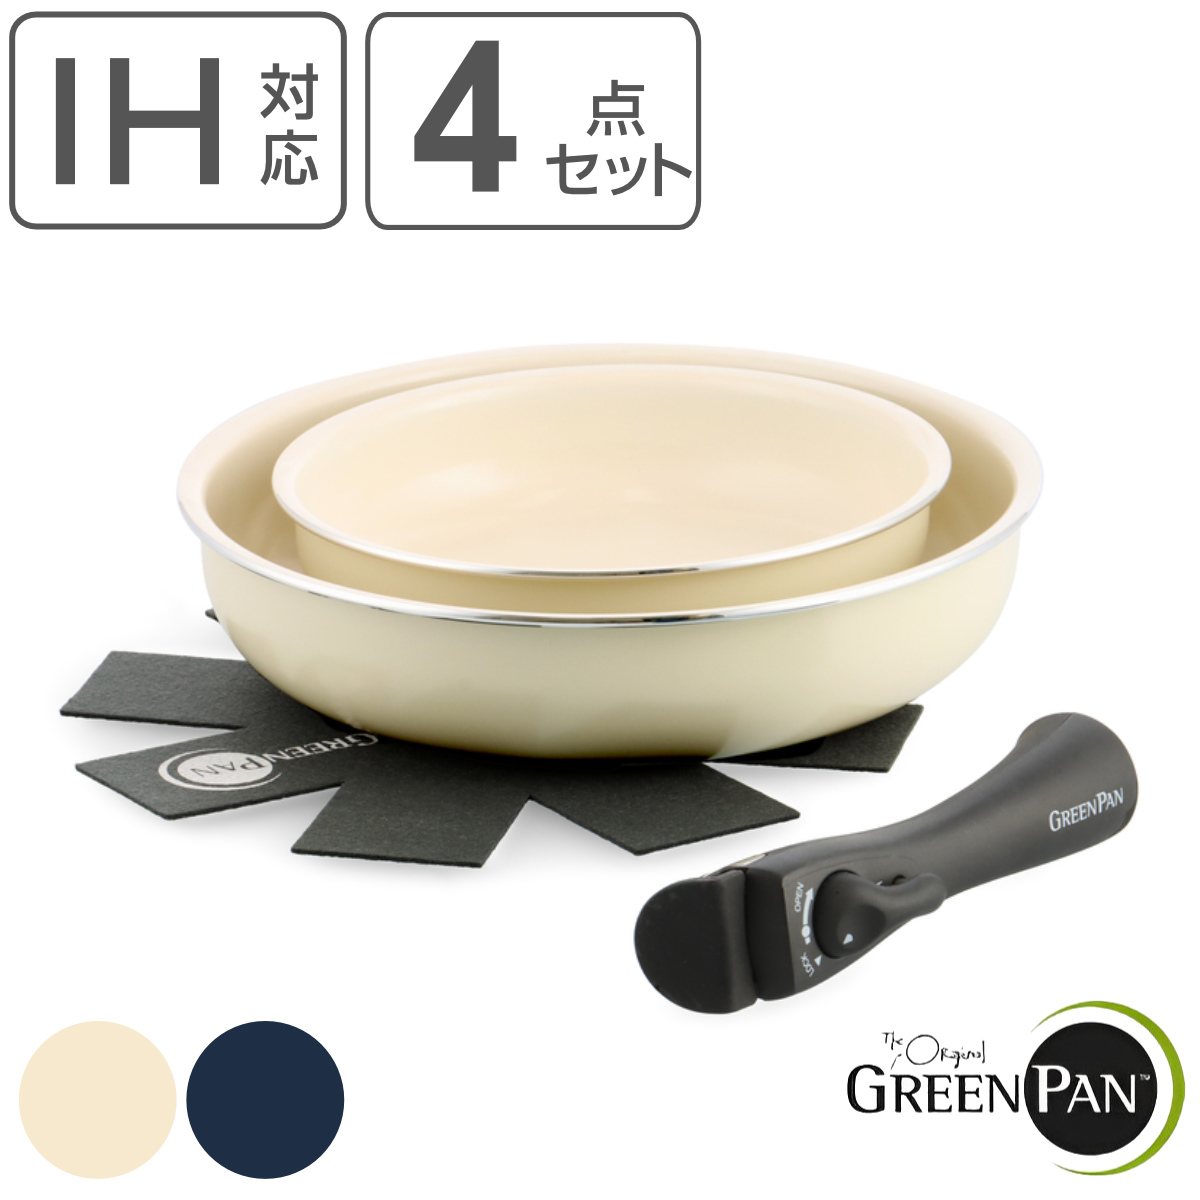 GREEN PAN フライパン4点セット 20cm 26cm クリックシェフ 着脱ハンドル付き